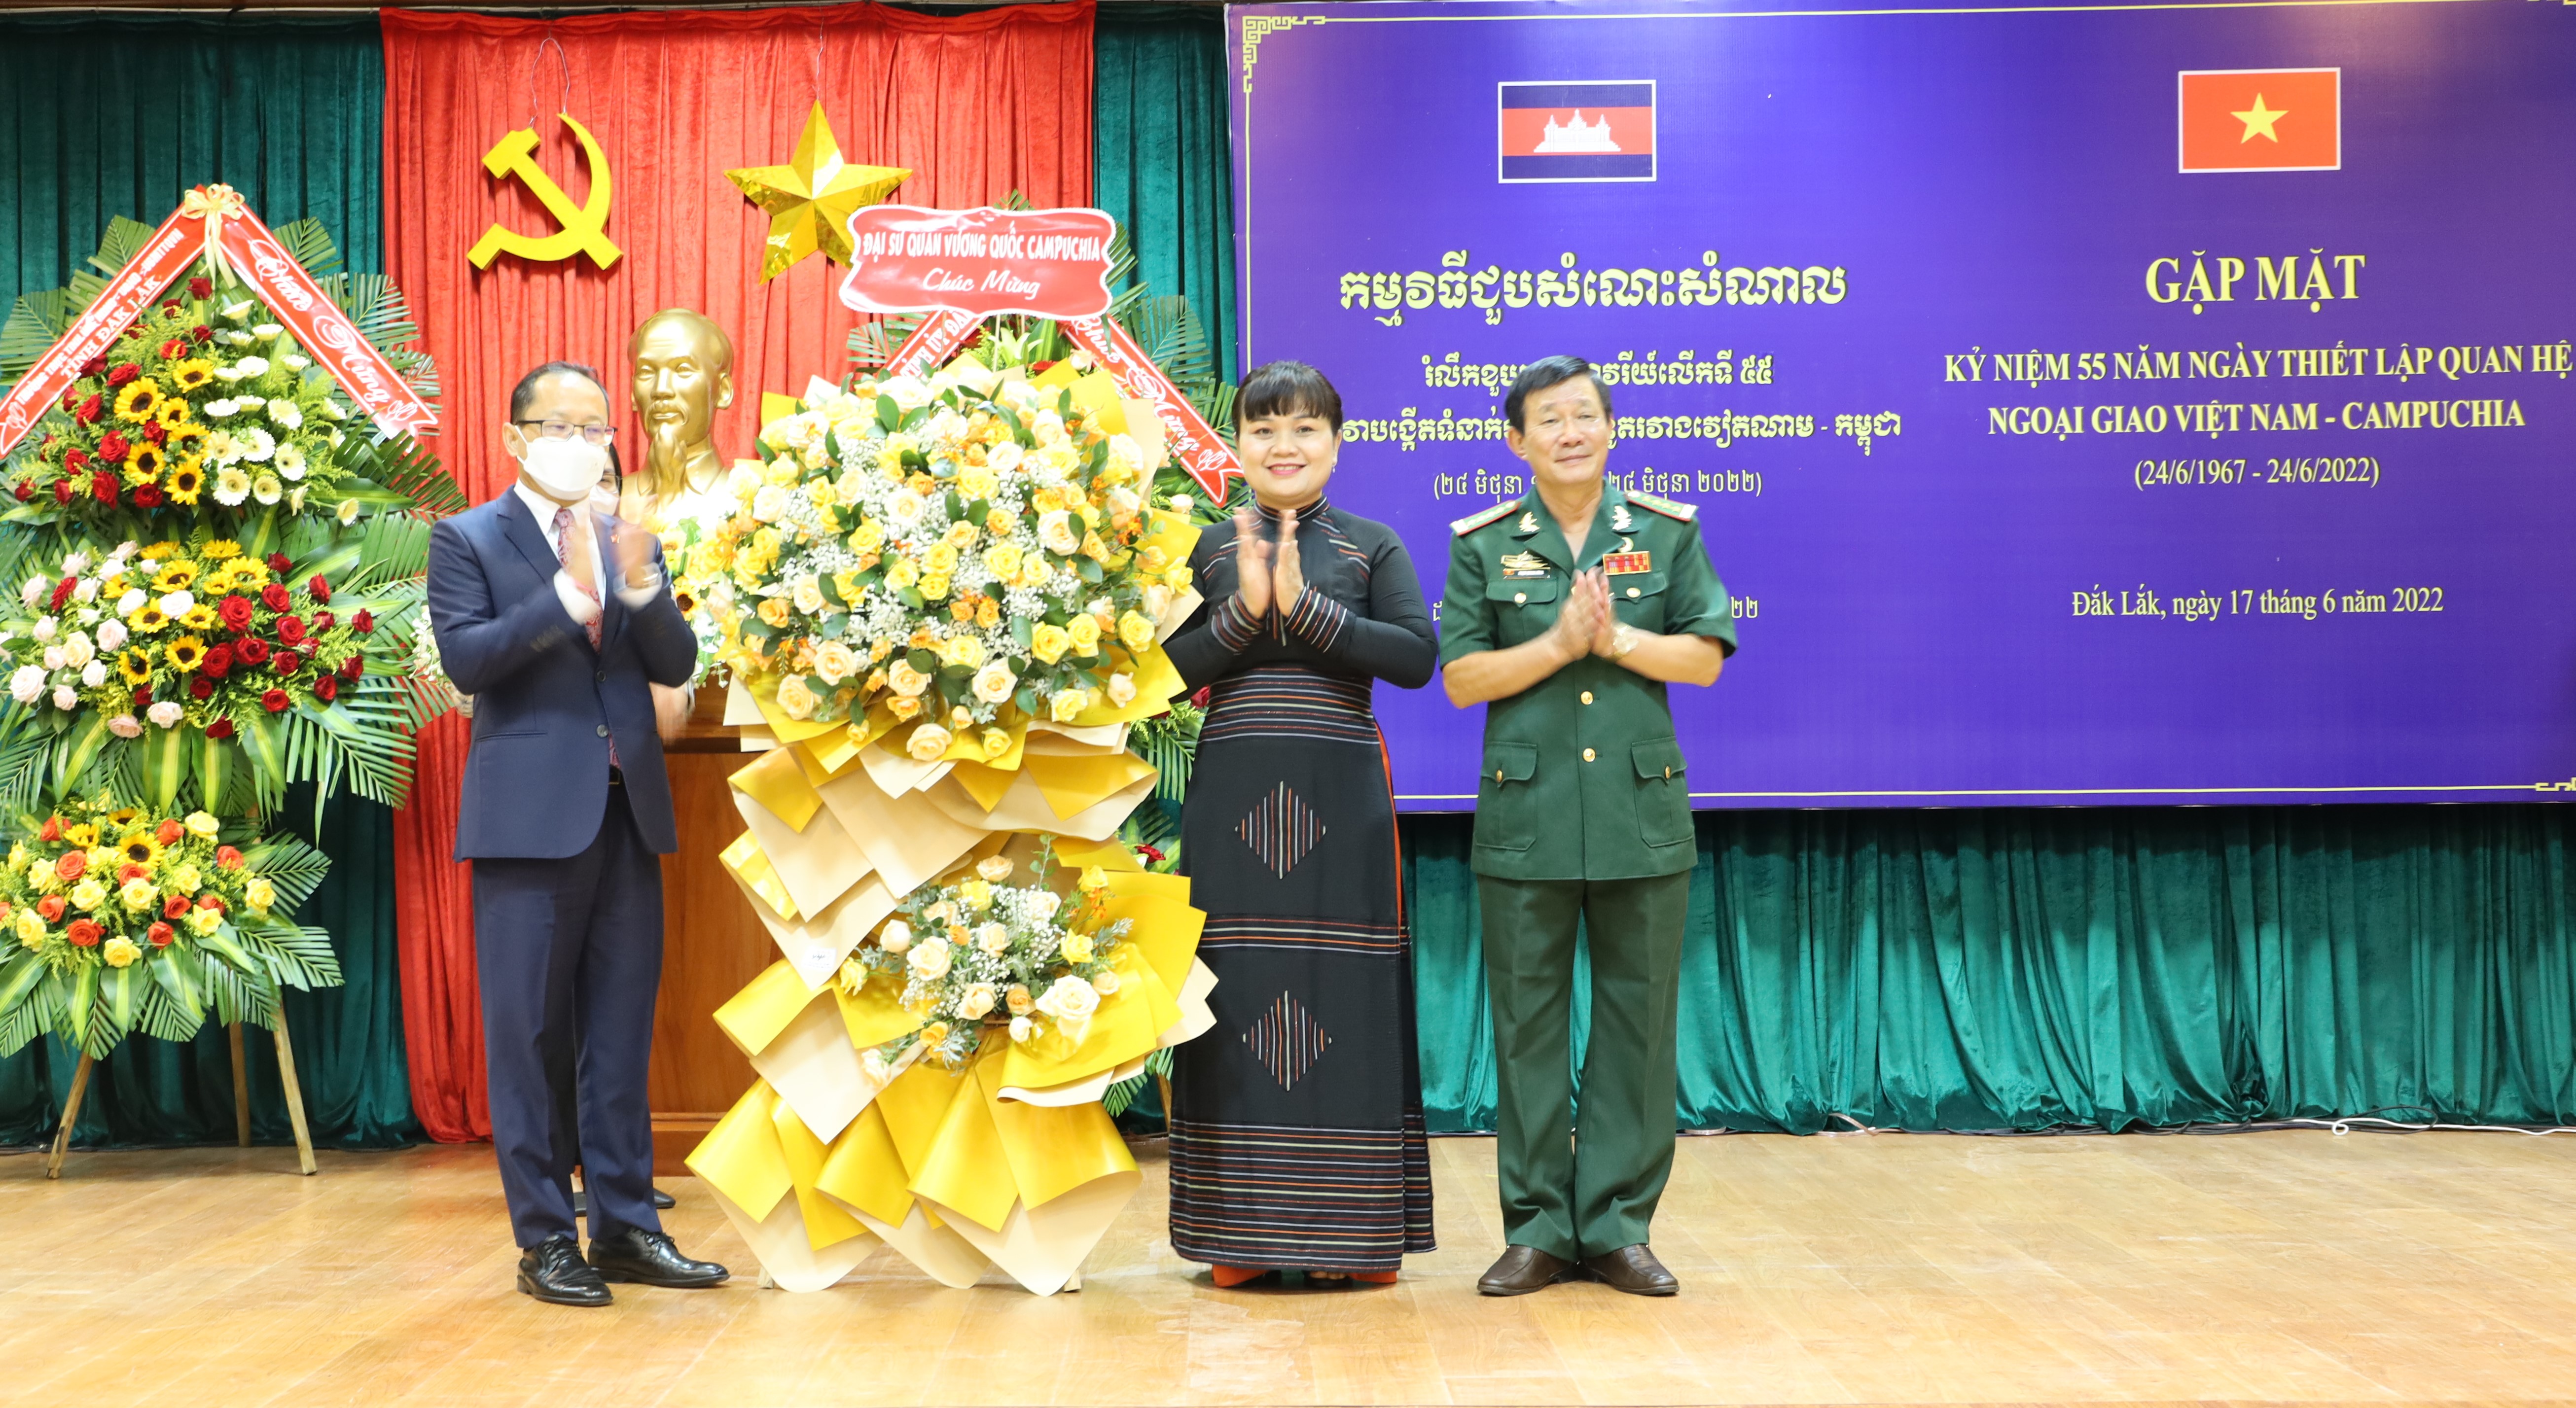 Gặp mặt kỷ niệm 55 năm Ngày thiết lập quan hệ ngoại giao Việt Nam - Campuchia (24/6/1967-24/6/2022)